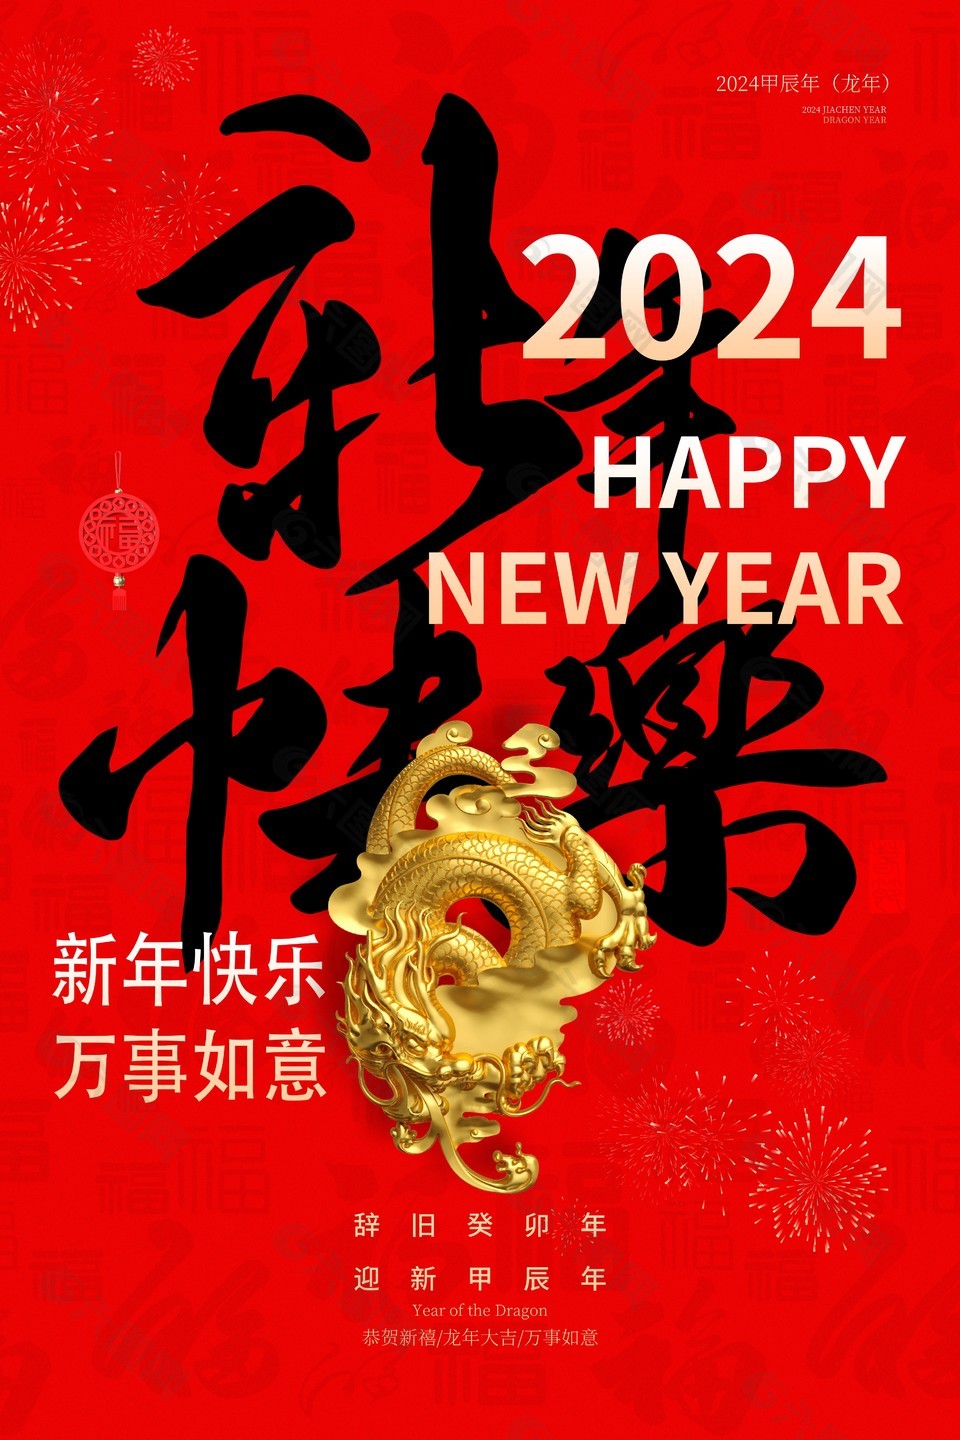 2024新年快乐手写毛笔字体红色喜庆海报